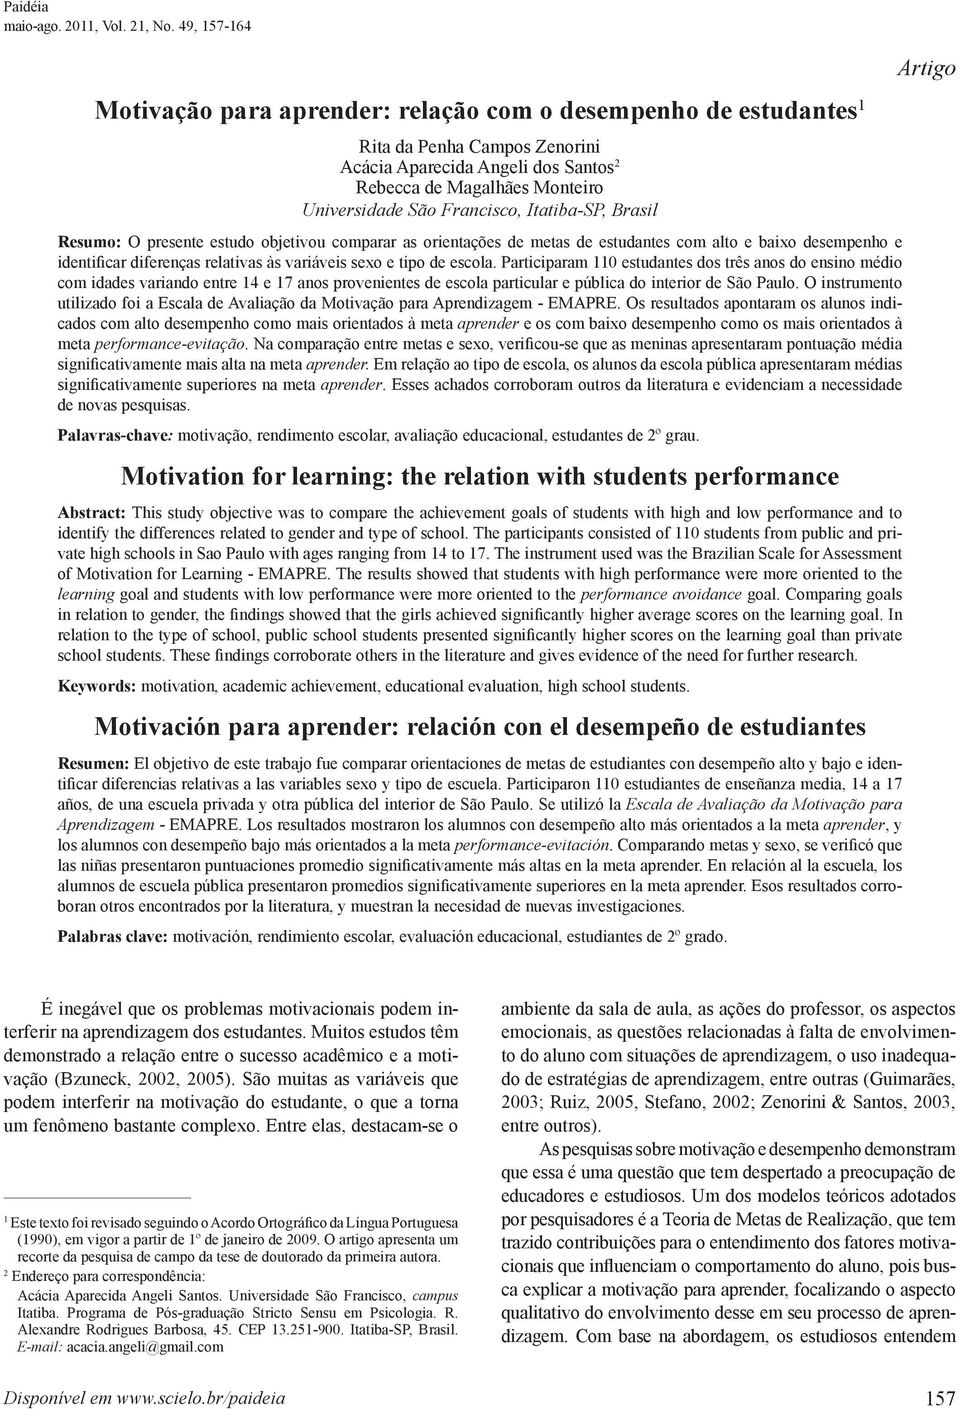 Francisco, Itatiba-SP, Brasil Resumo: O presente estudo objetivou comparar as orientações de metas de estudantes com alto e baixo desempenho e identificar diferenças relativas às variáveis sexo e